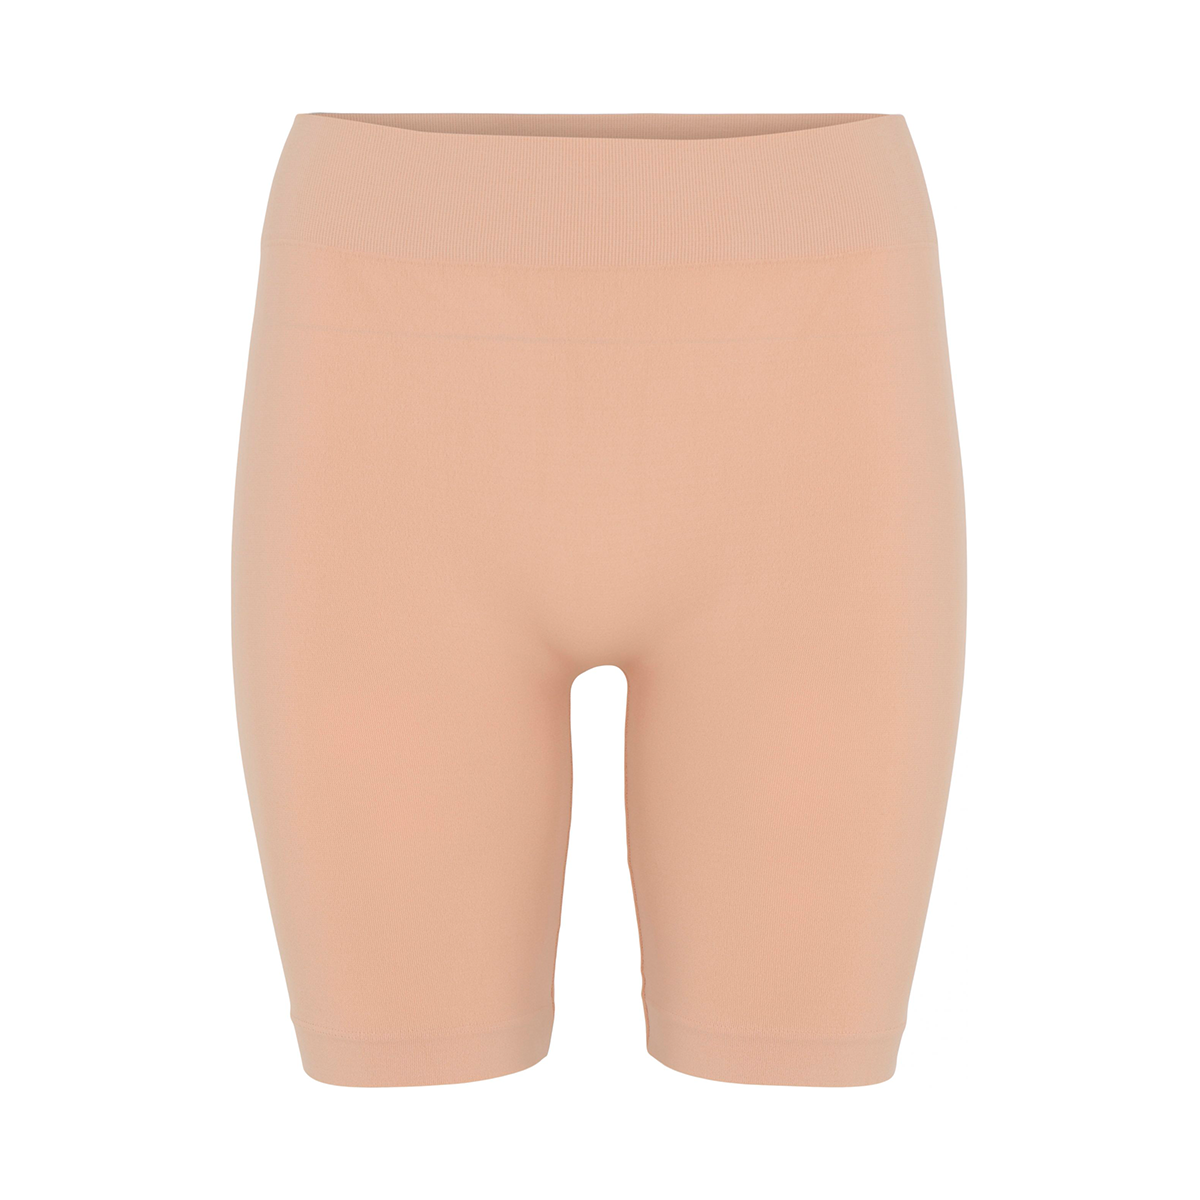 Decoy Seamless Shorts, Farbe: Beige, Größe: S/M, Damen von Decoy